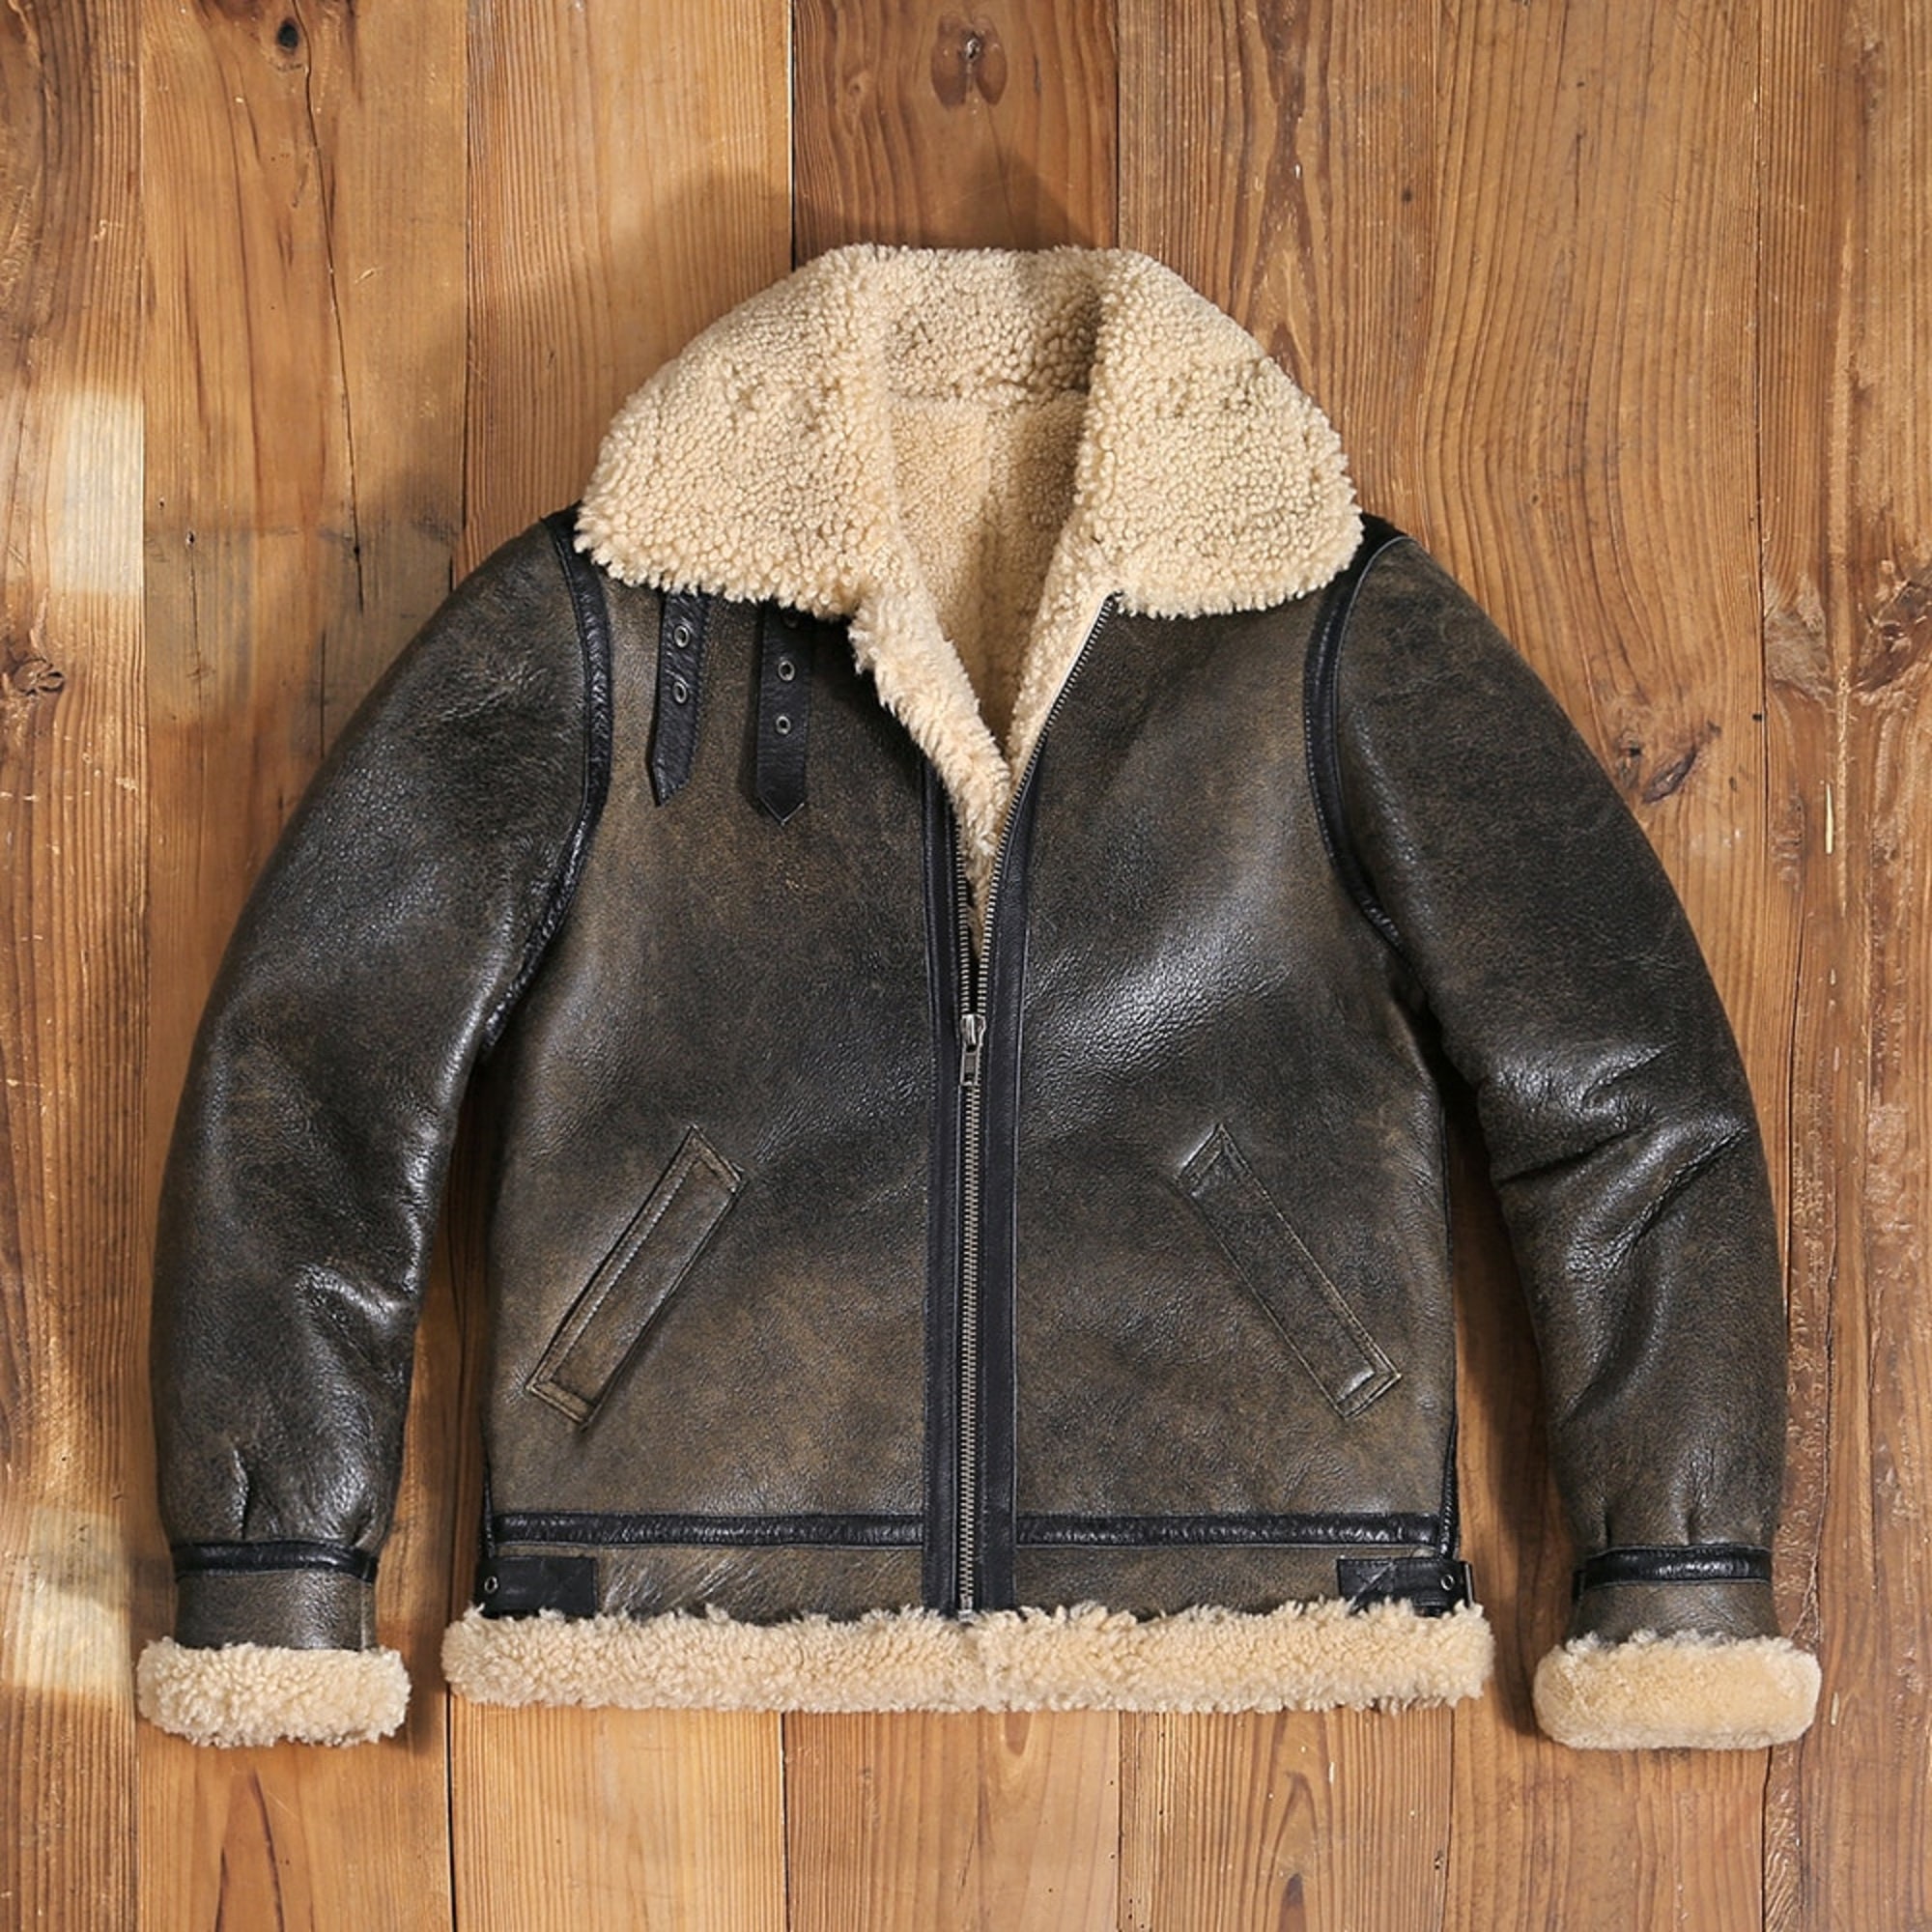 Leather Jacket Mens Faux Fur Jacket Sherpa Lined Fleece Shearling Coat Warm  Military Cargo Trucker Aviator Bomber Jacket Outwear